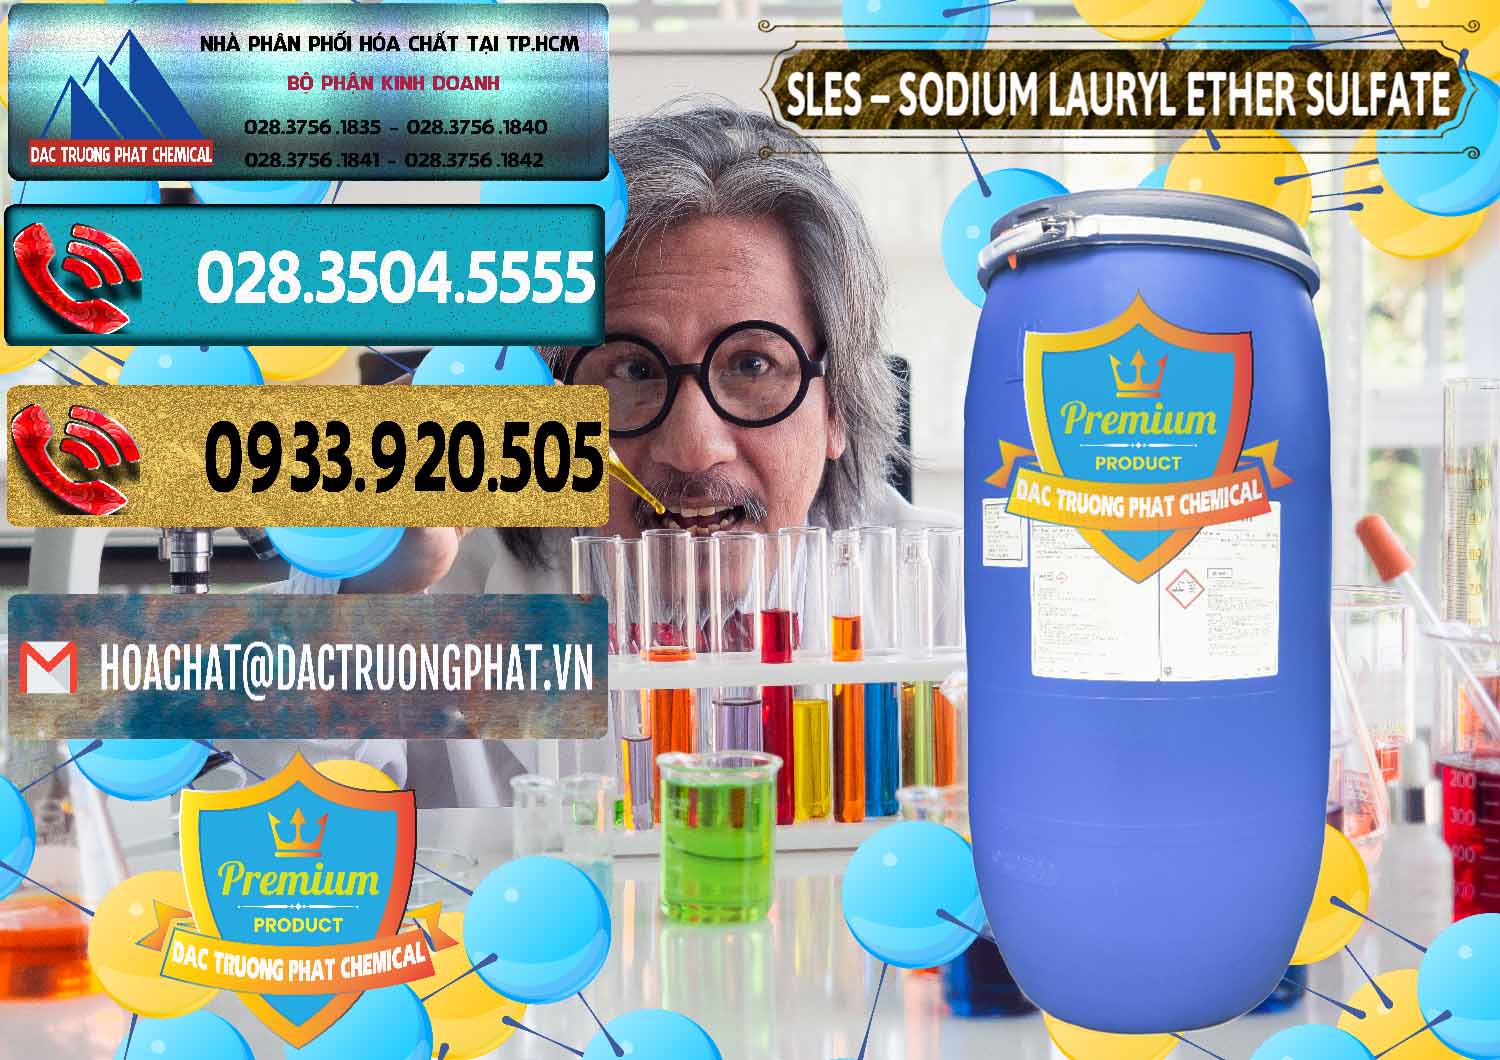 Nơi chuyên cung cấp - bán Chất Tạo Bọt Sles - Sodium Lauryl Ether Sulphate Kao Indonesia - 0046 - Phân phối ( cung ứng ) hóa chất tại TP.HCM - hoachatdetnhuom.com